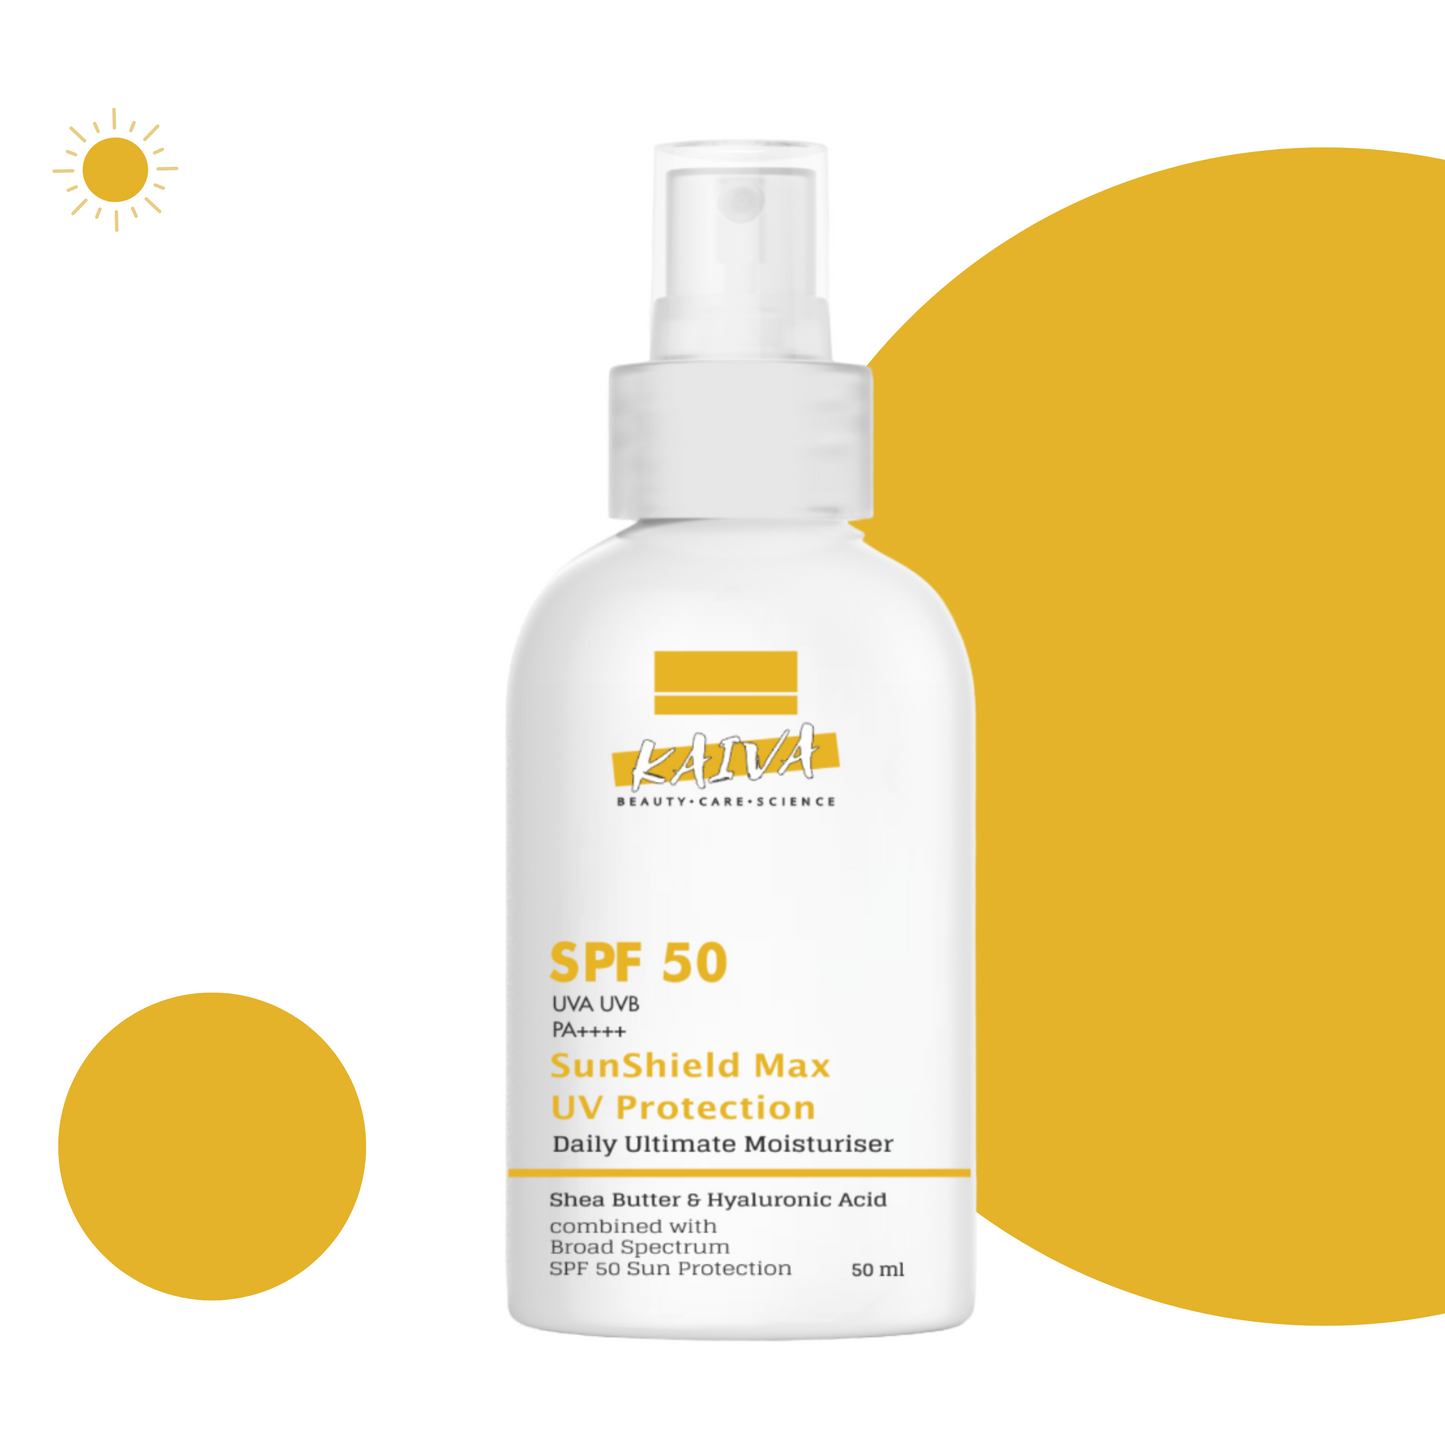 SunShield Max SPF50 Sunscreen – Advanced Sun Protection